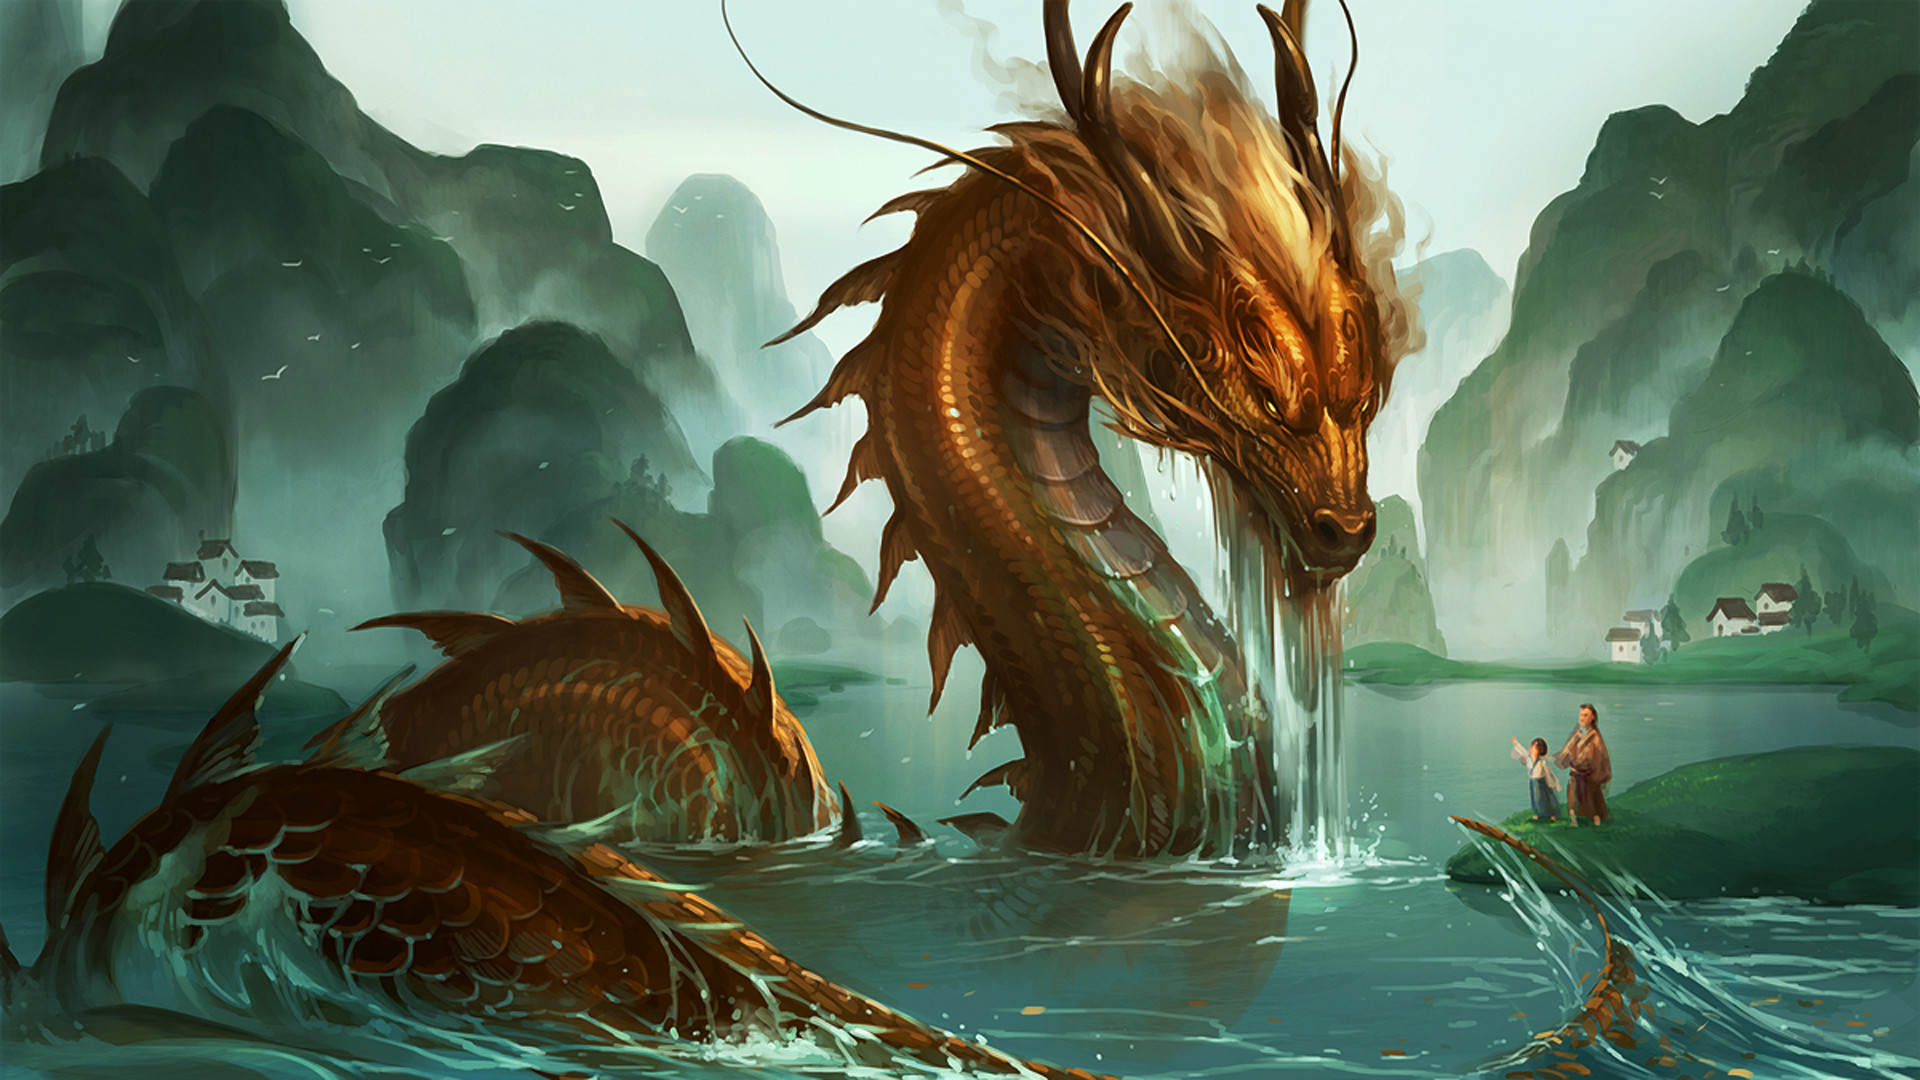 Loài rồng, dragon, Eastern dragon, Wyvern: Loài rồng với đôi cánh to lớn, thân hình khổng lồ và sức mạnh phi thường đã luôn gắn liền với những câu chuyện thần thoại từ xa xưa. Hãy cùng nhau khám phá thế giới loài rồng với những bức ảnh đầy tinh tế và đẹp mắt nhất.